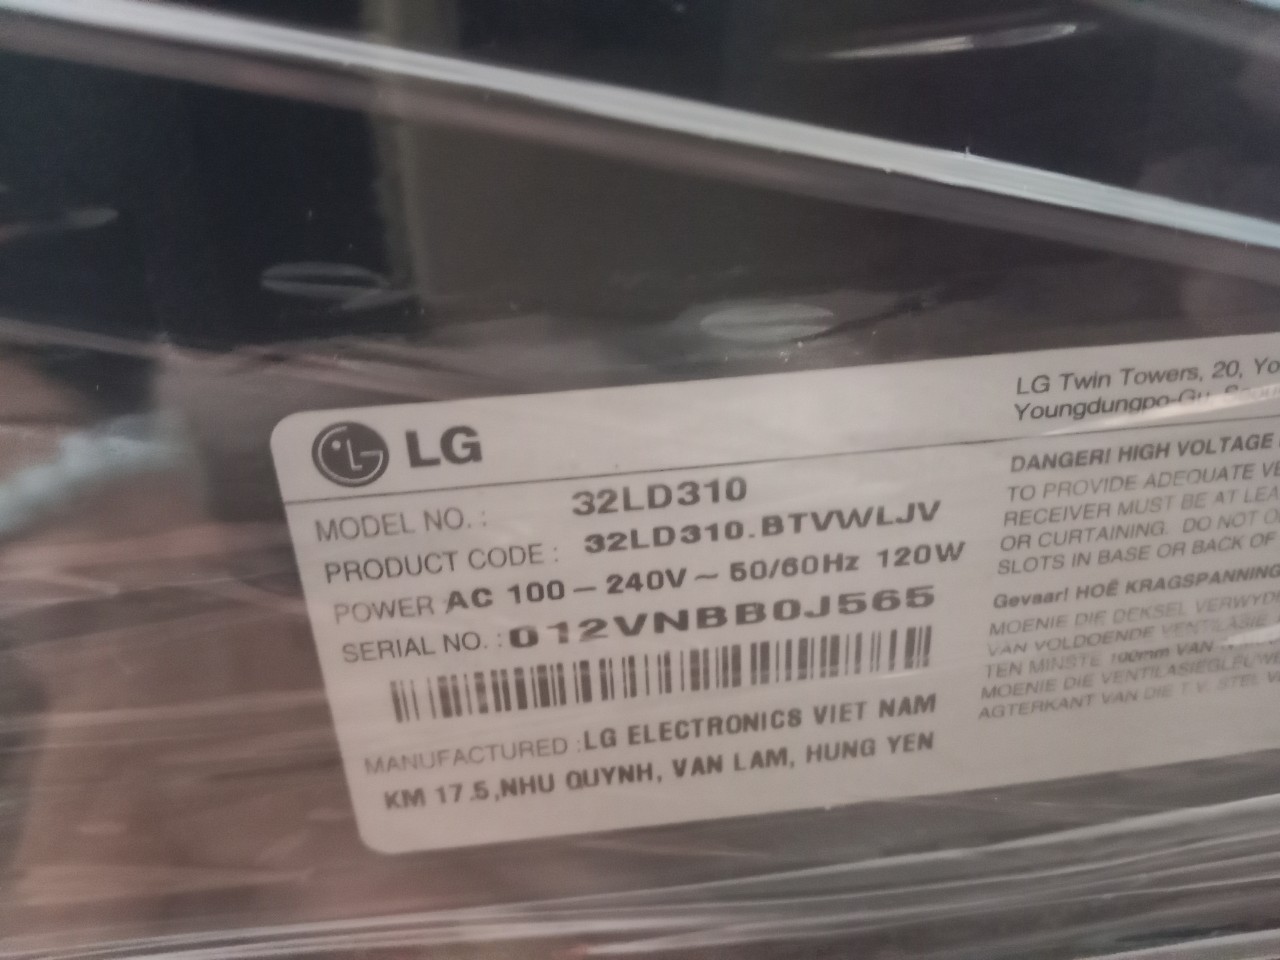 LED Tivi LG 32 inch 32LD310 cũ SP019068